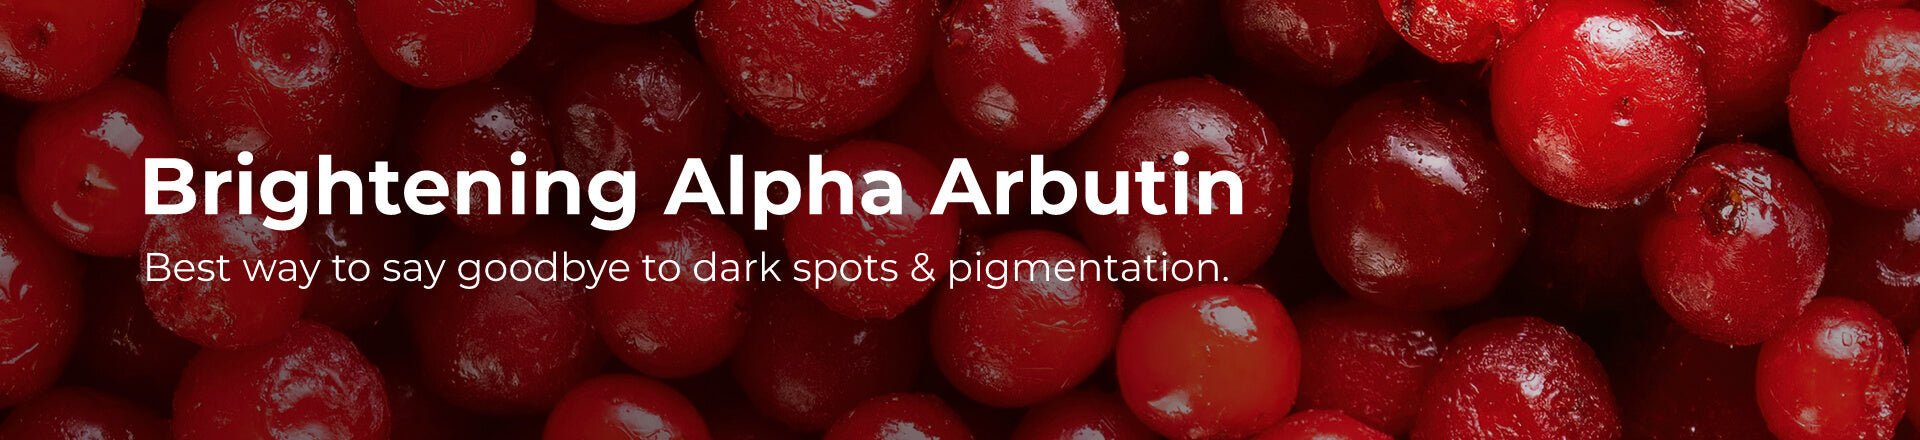 Brightening Alpha Arbutin | Pilgrim India